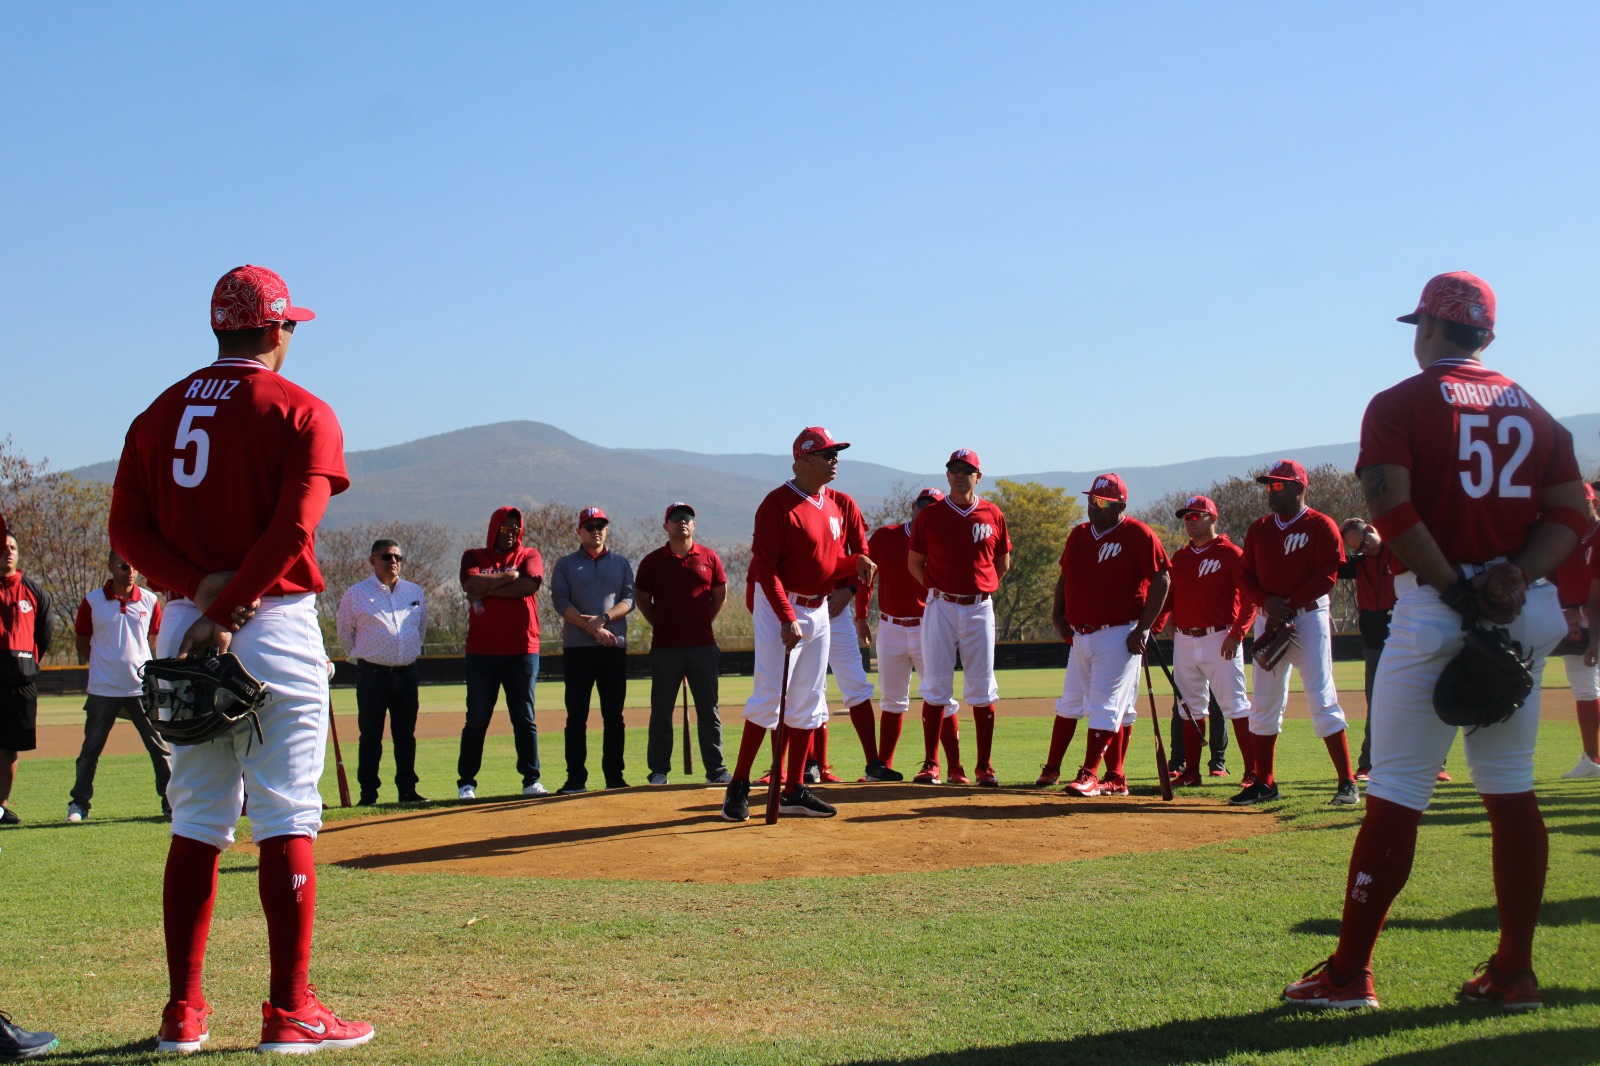 Los Diablos Rojos del México están escribiendo su historia en Oaxaca durante la pretemporada. Con el manager Lorenzo Bundy liderando el camino, el equipo se enfoca en perfeccionar los fundamentos del juego.